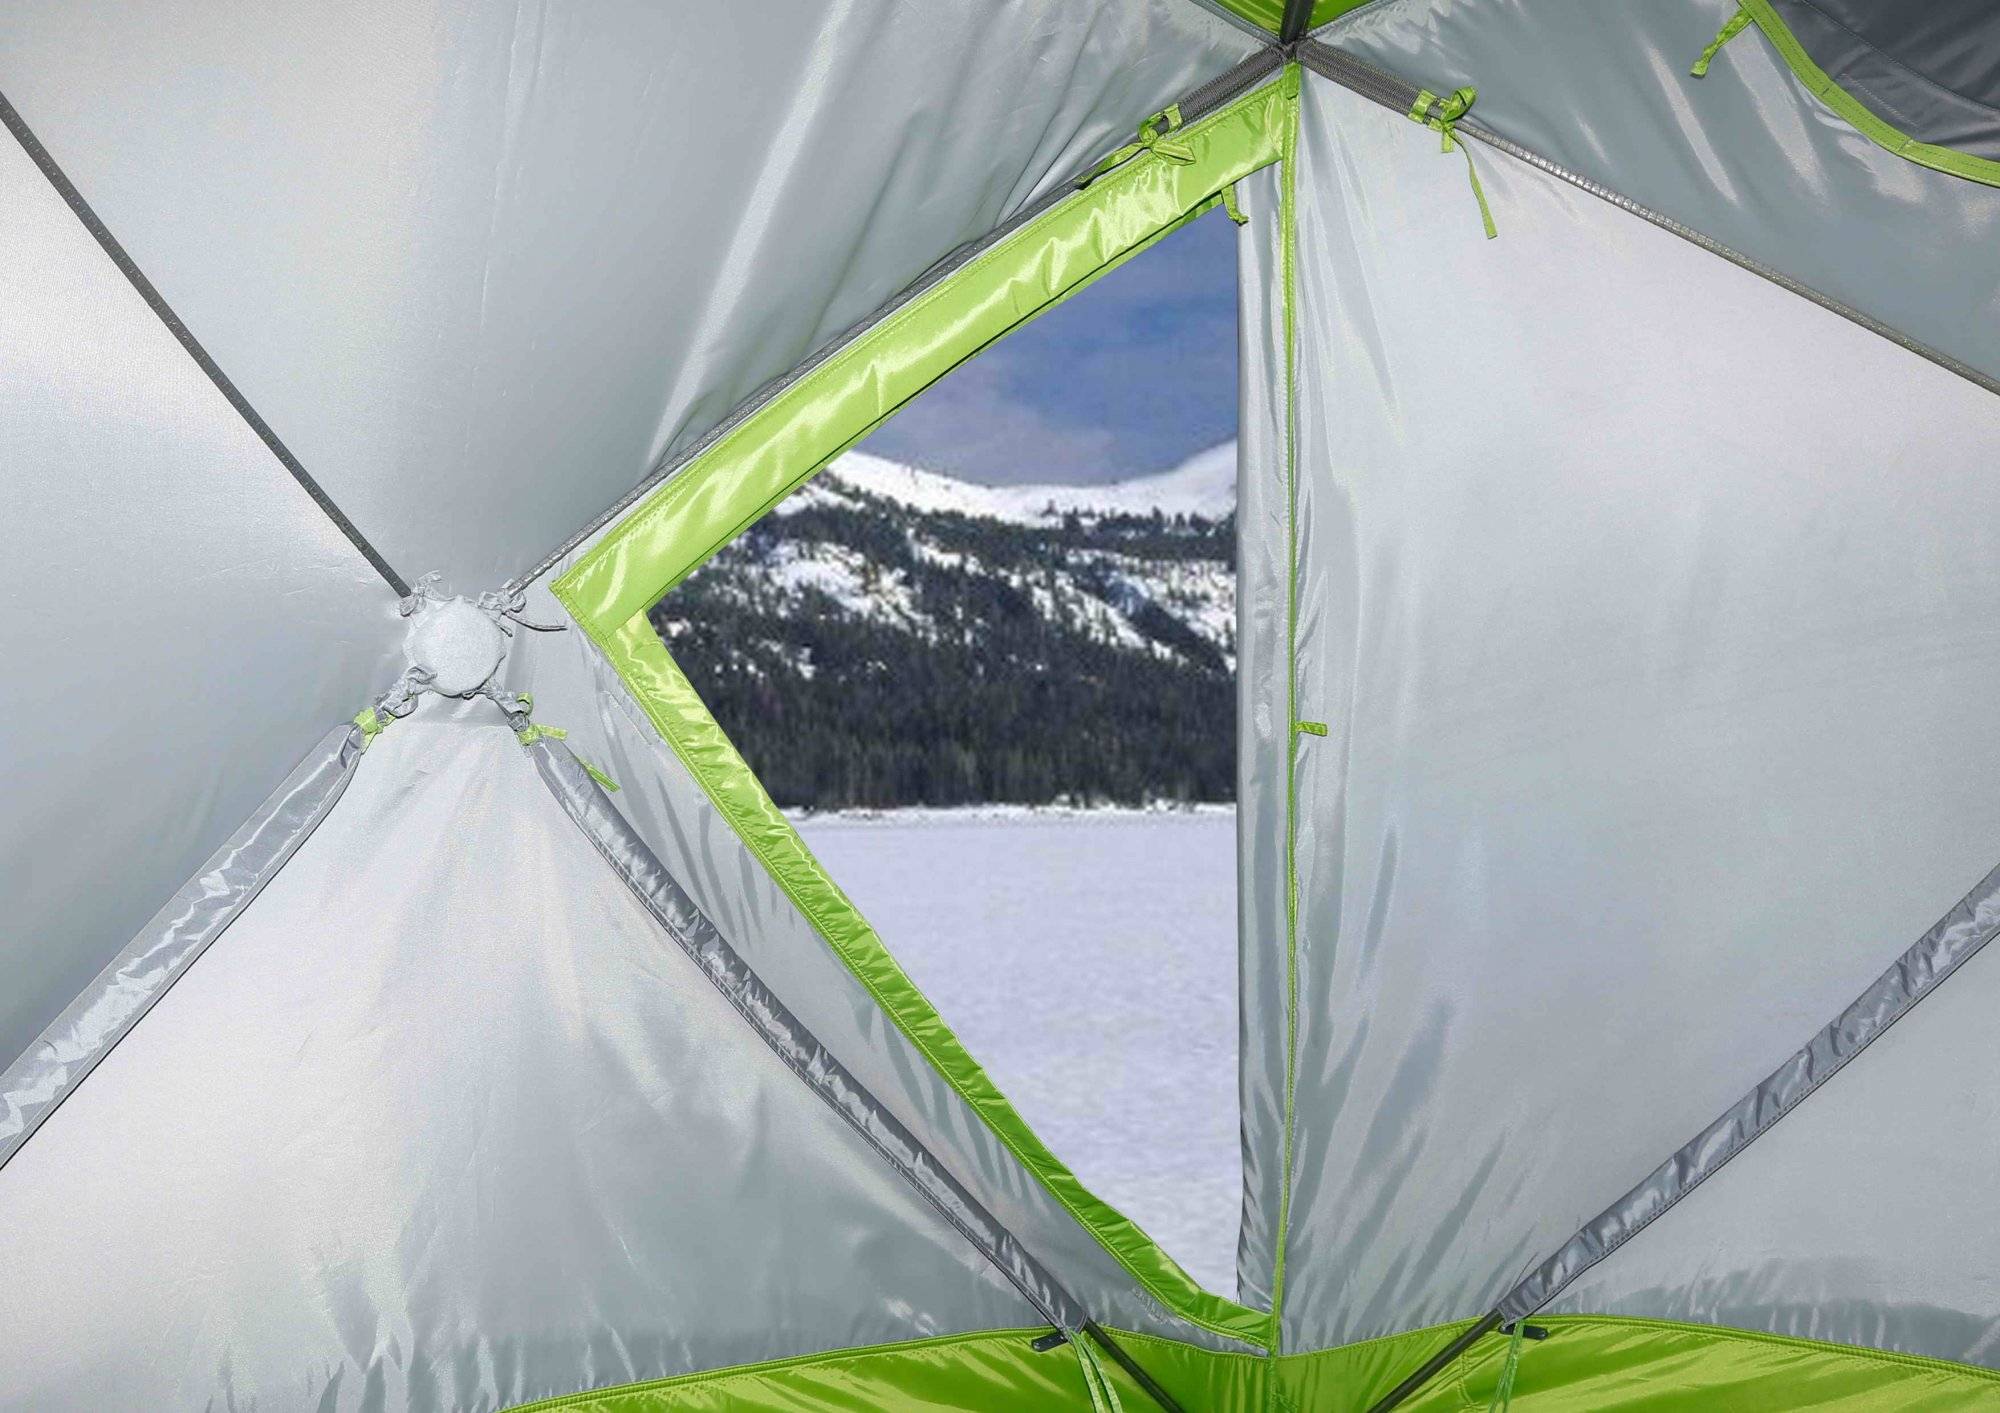 Палатка для зимней рыбалки: как и какую выбрать